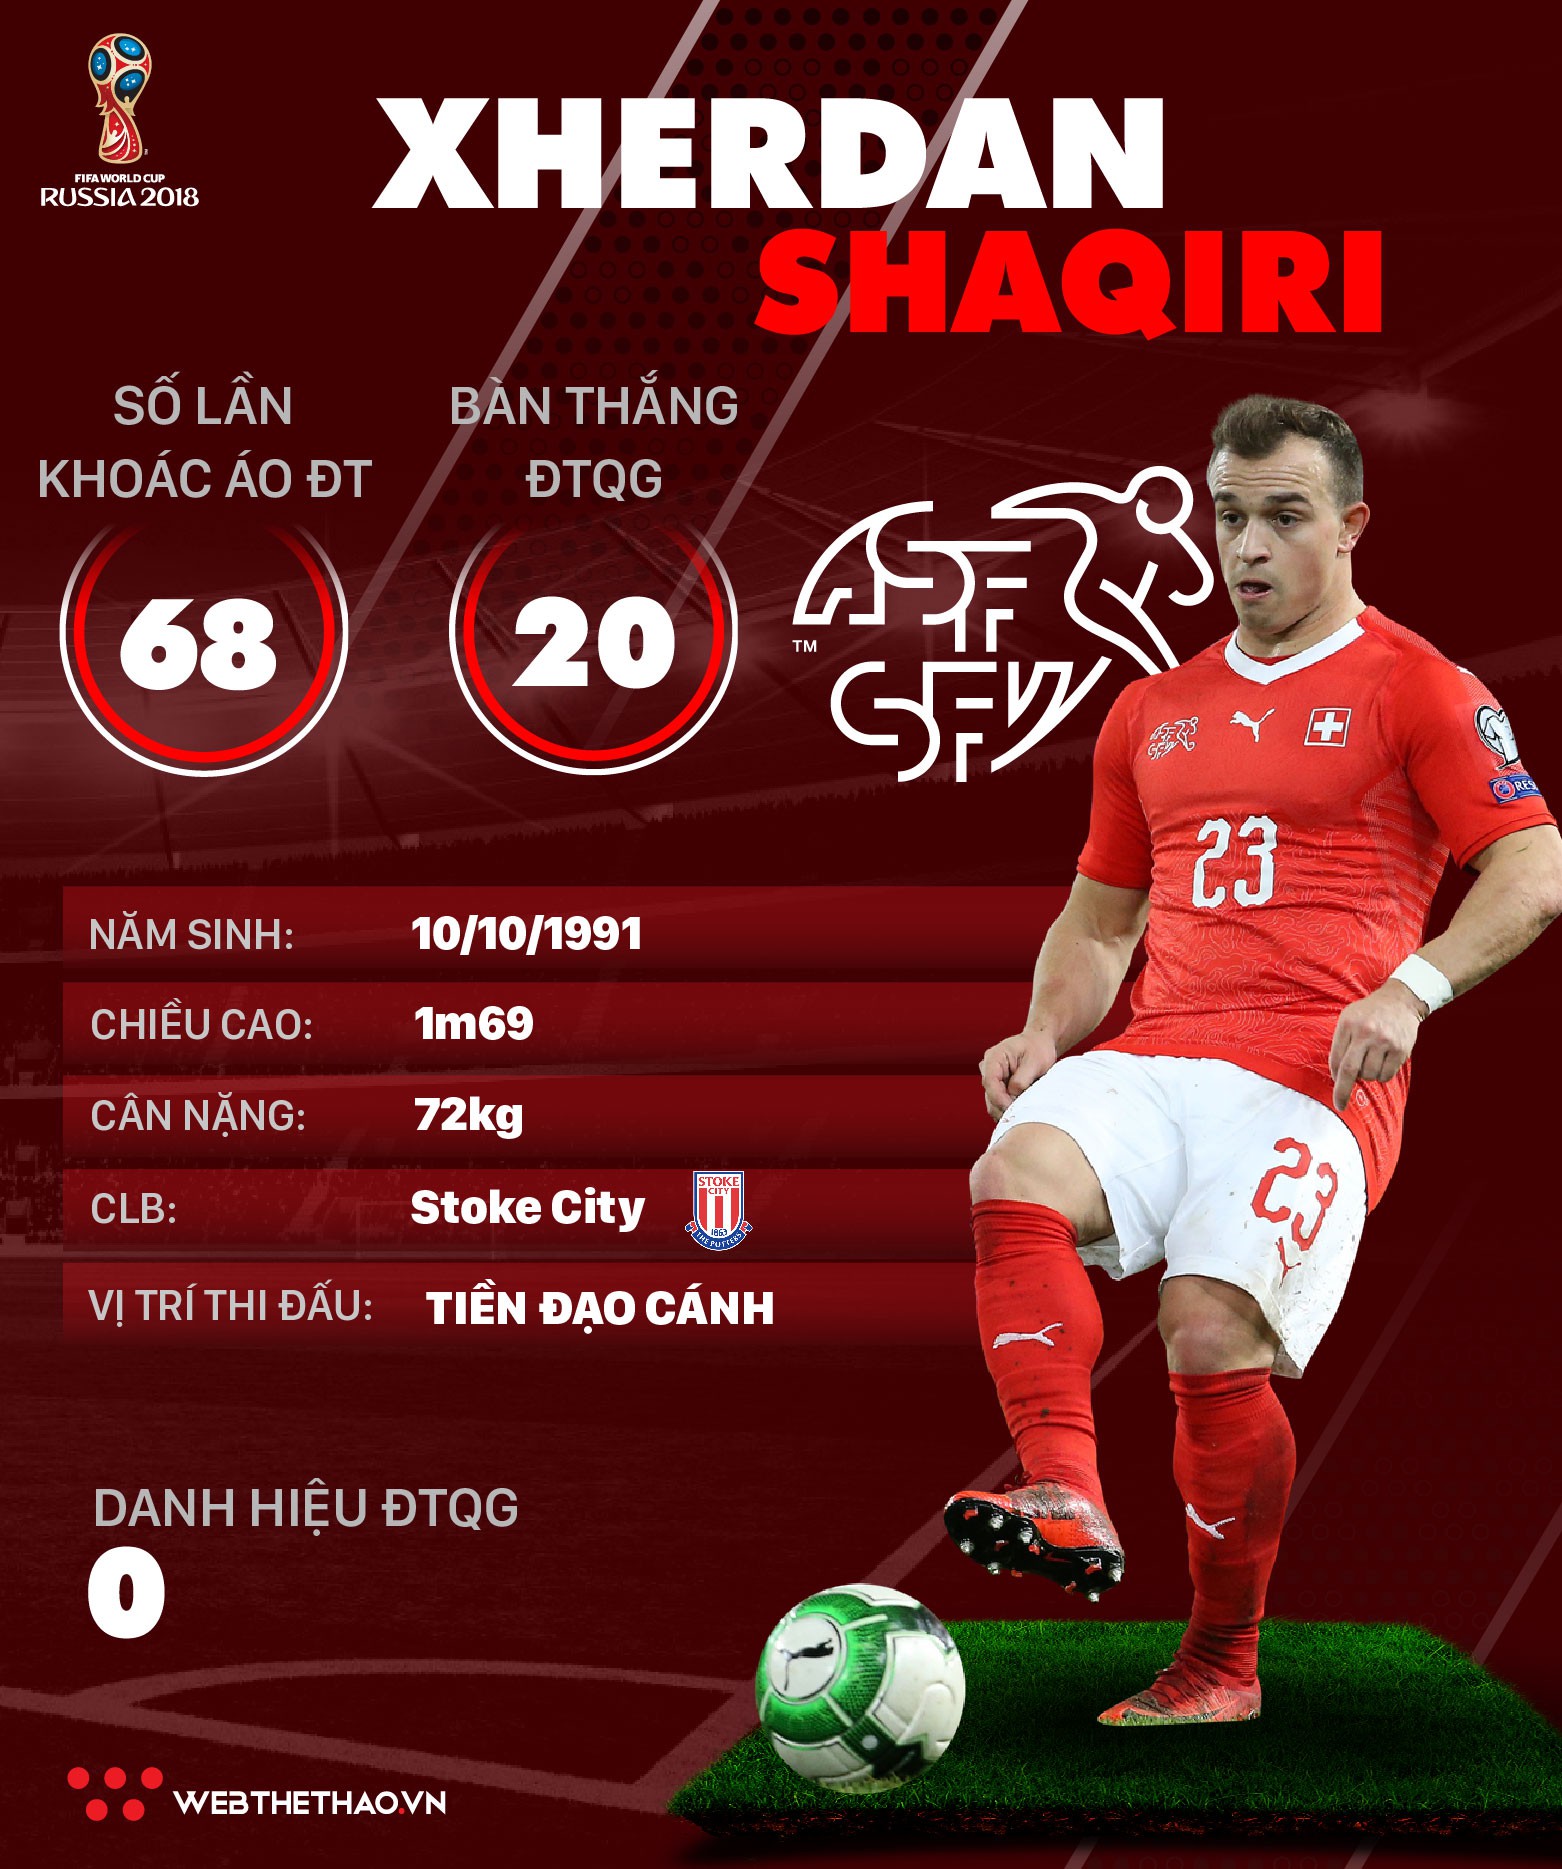 Thông tin cầu thủ Xherdan Shaqiri của ĐT Thụy Sĩ dự World Cup 2018 - Ảnh 1.